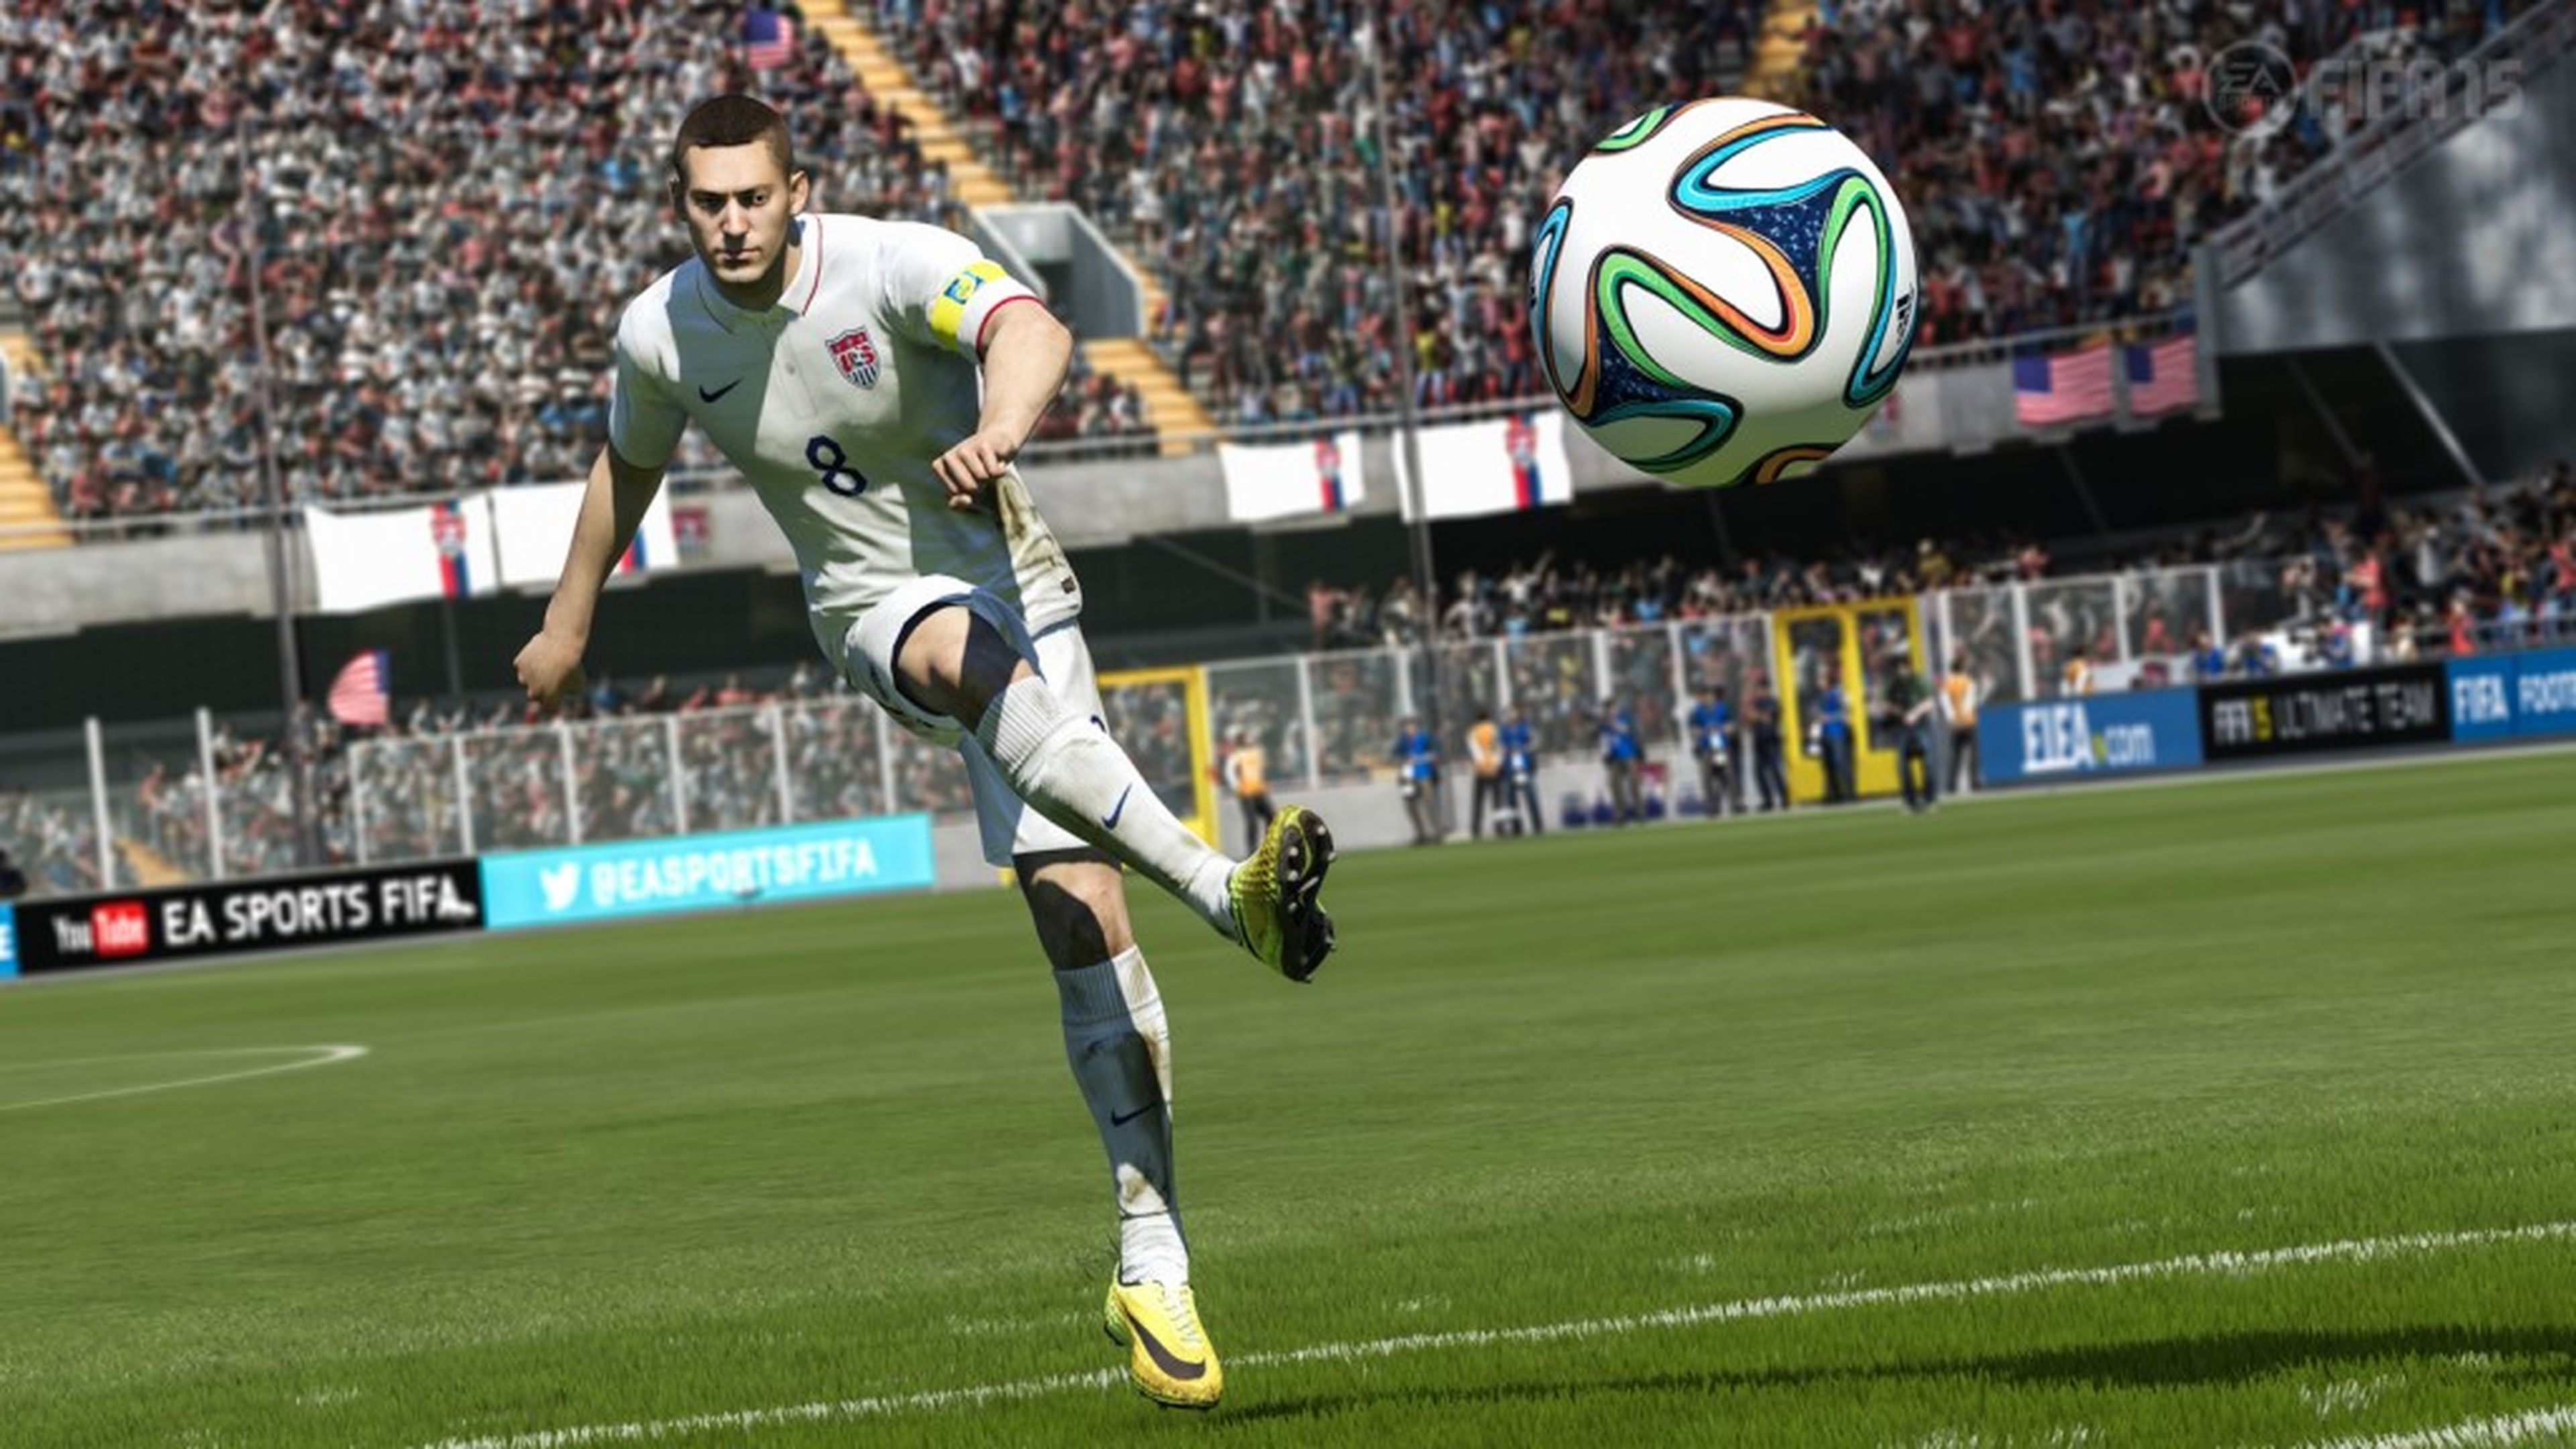 FIFA 15 - Best Goals of the Week - Round 17